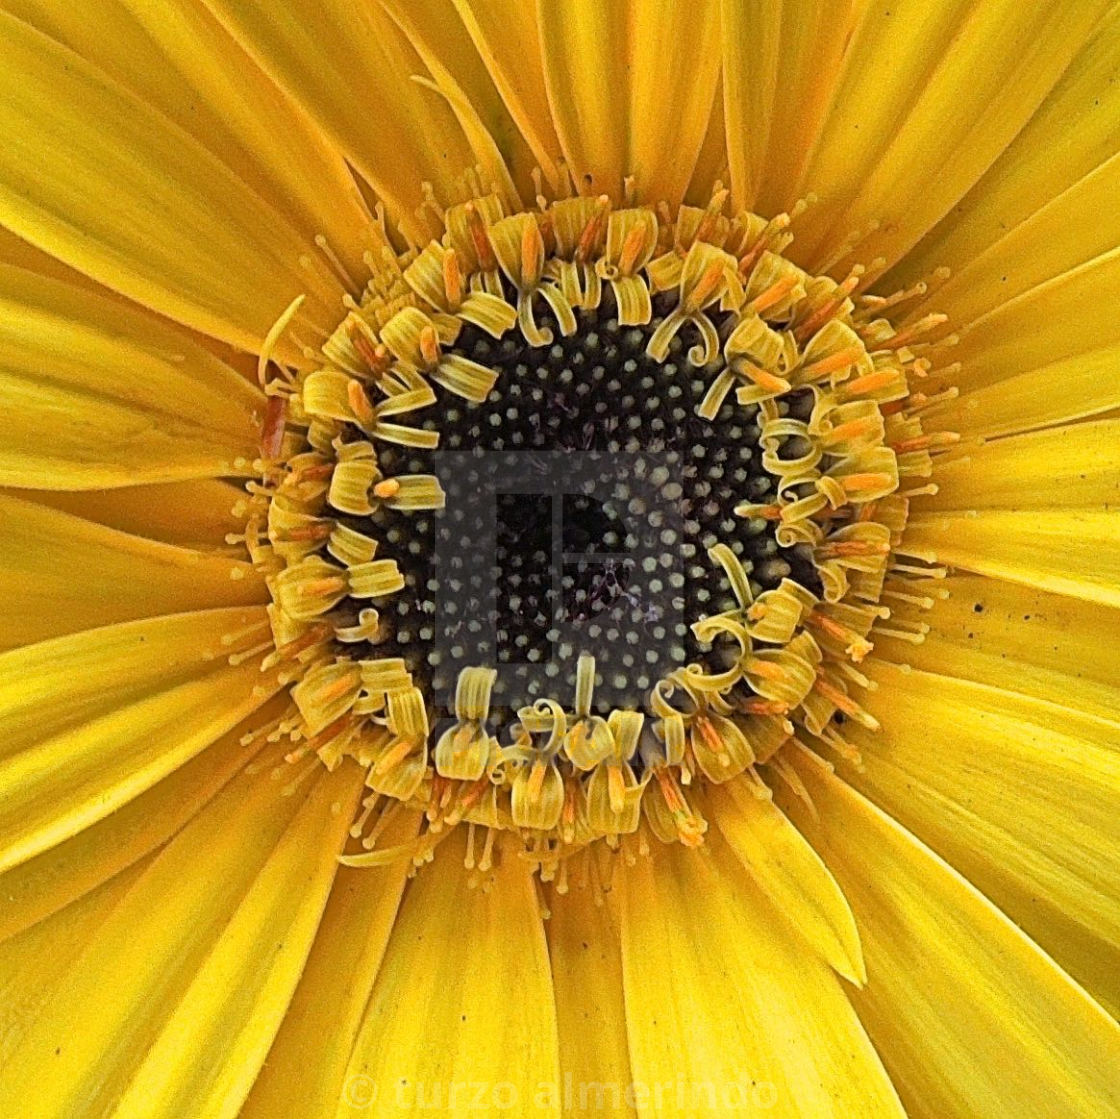 "Hearth of yellow daisy" stock image